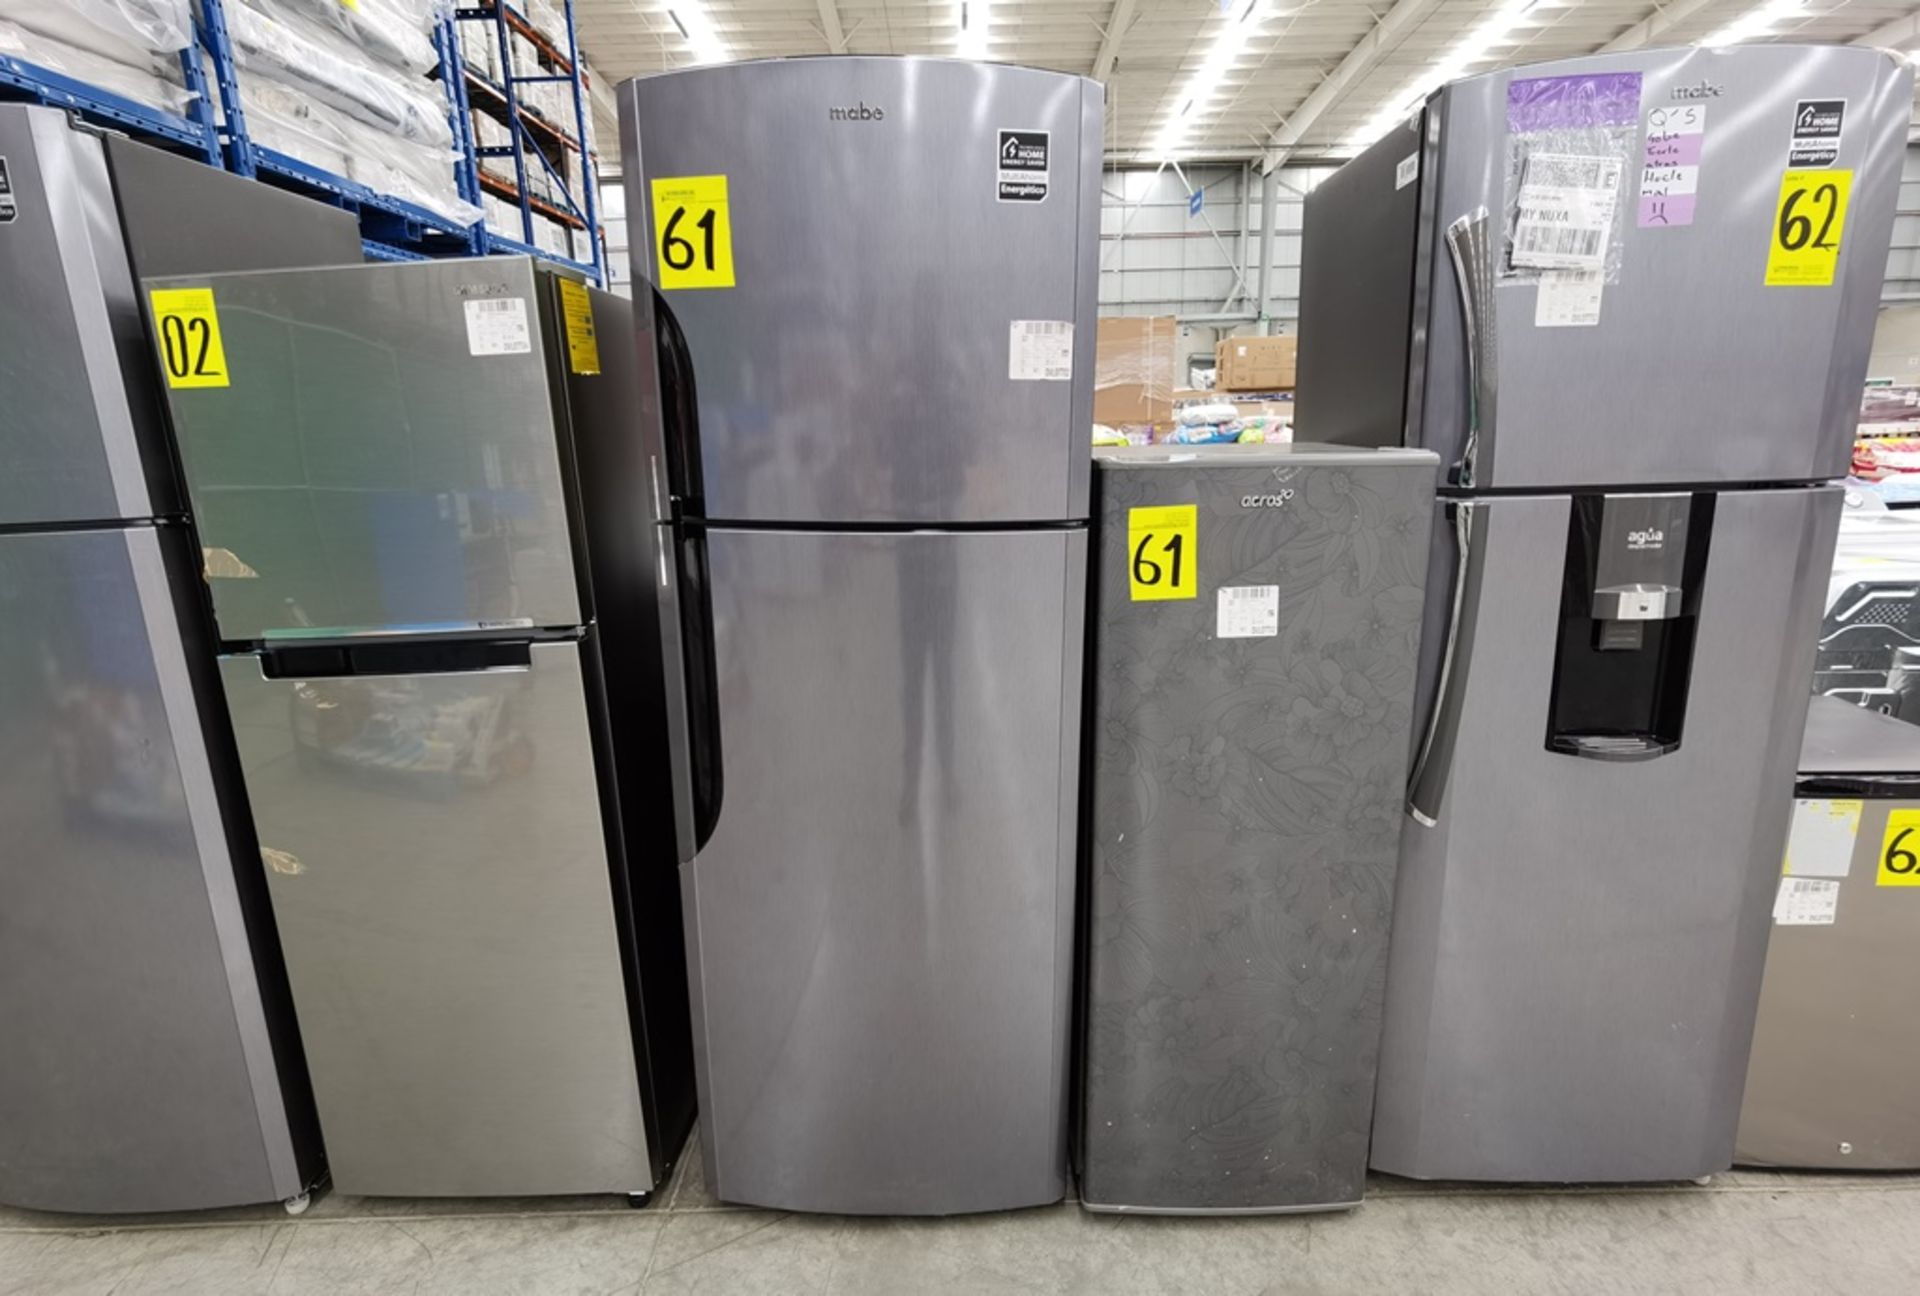 Lote de 2 refrigeradores conformado por: 1 Refrigerador maca Mabe Modelo RMS400IX, No de serie 2204